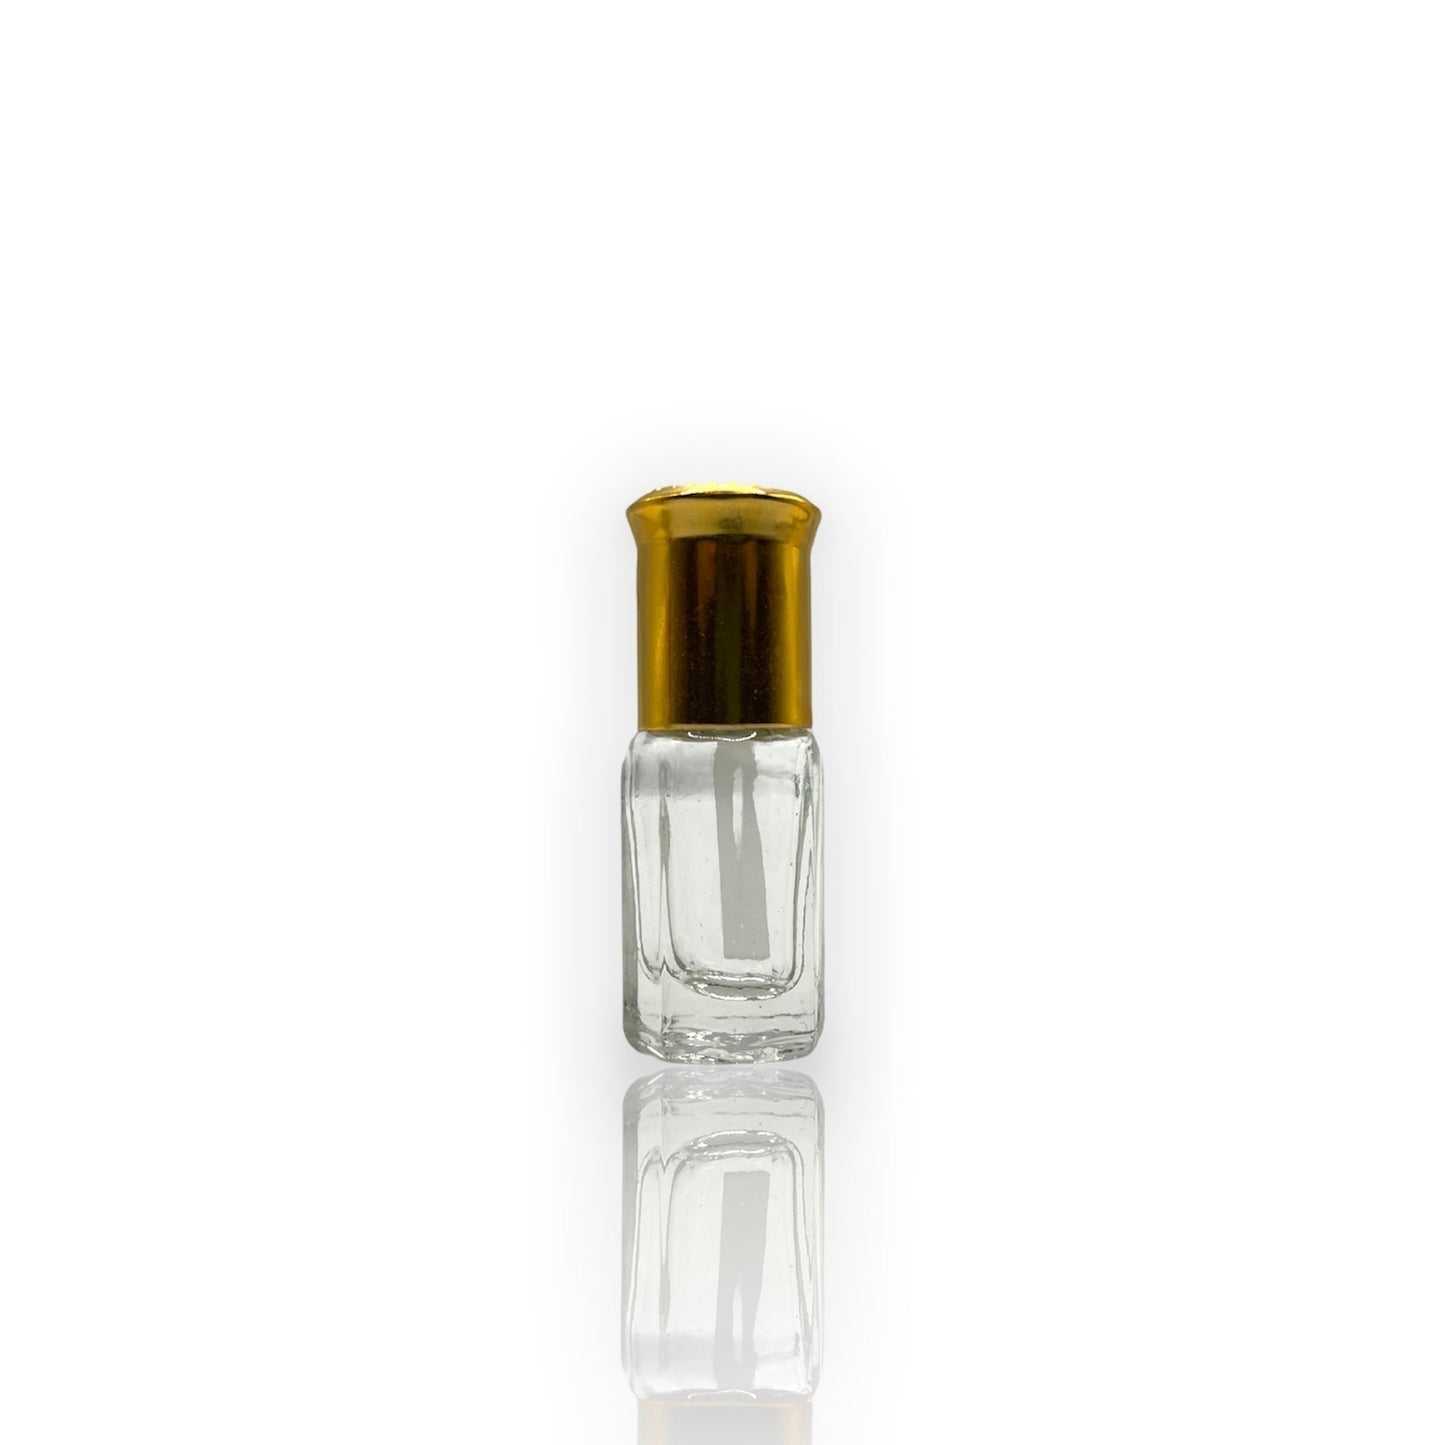 O-04 Öl Parfüm *Inspiriert von Ameer Al Oud